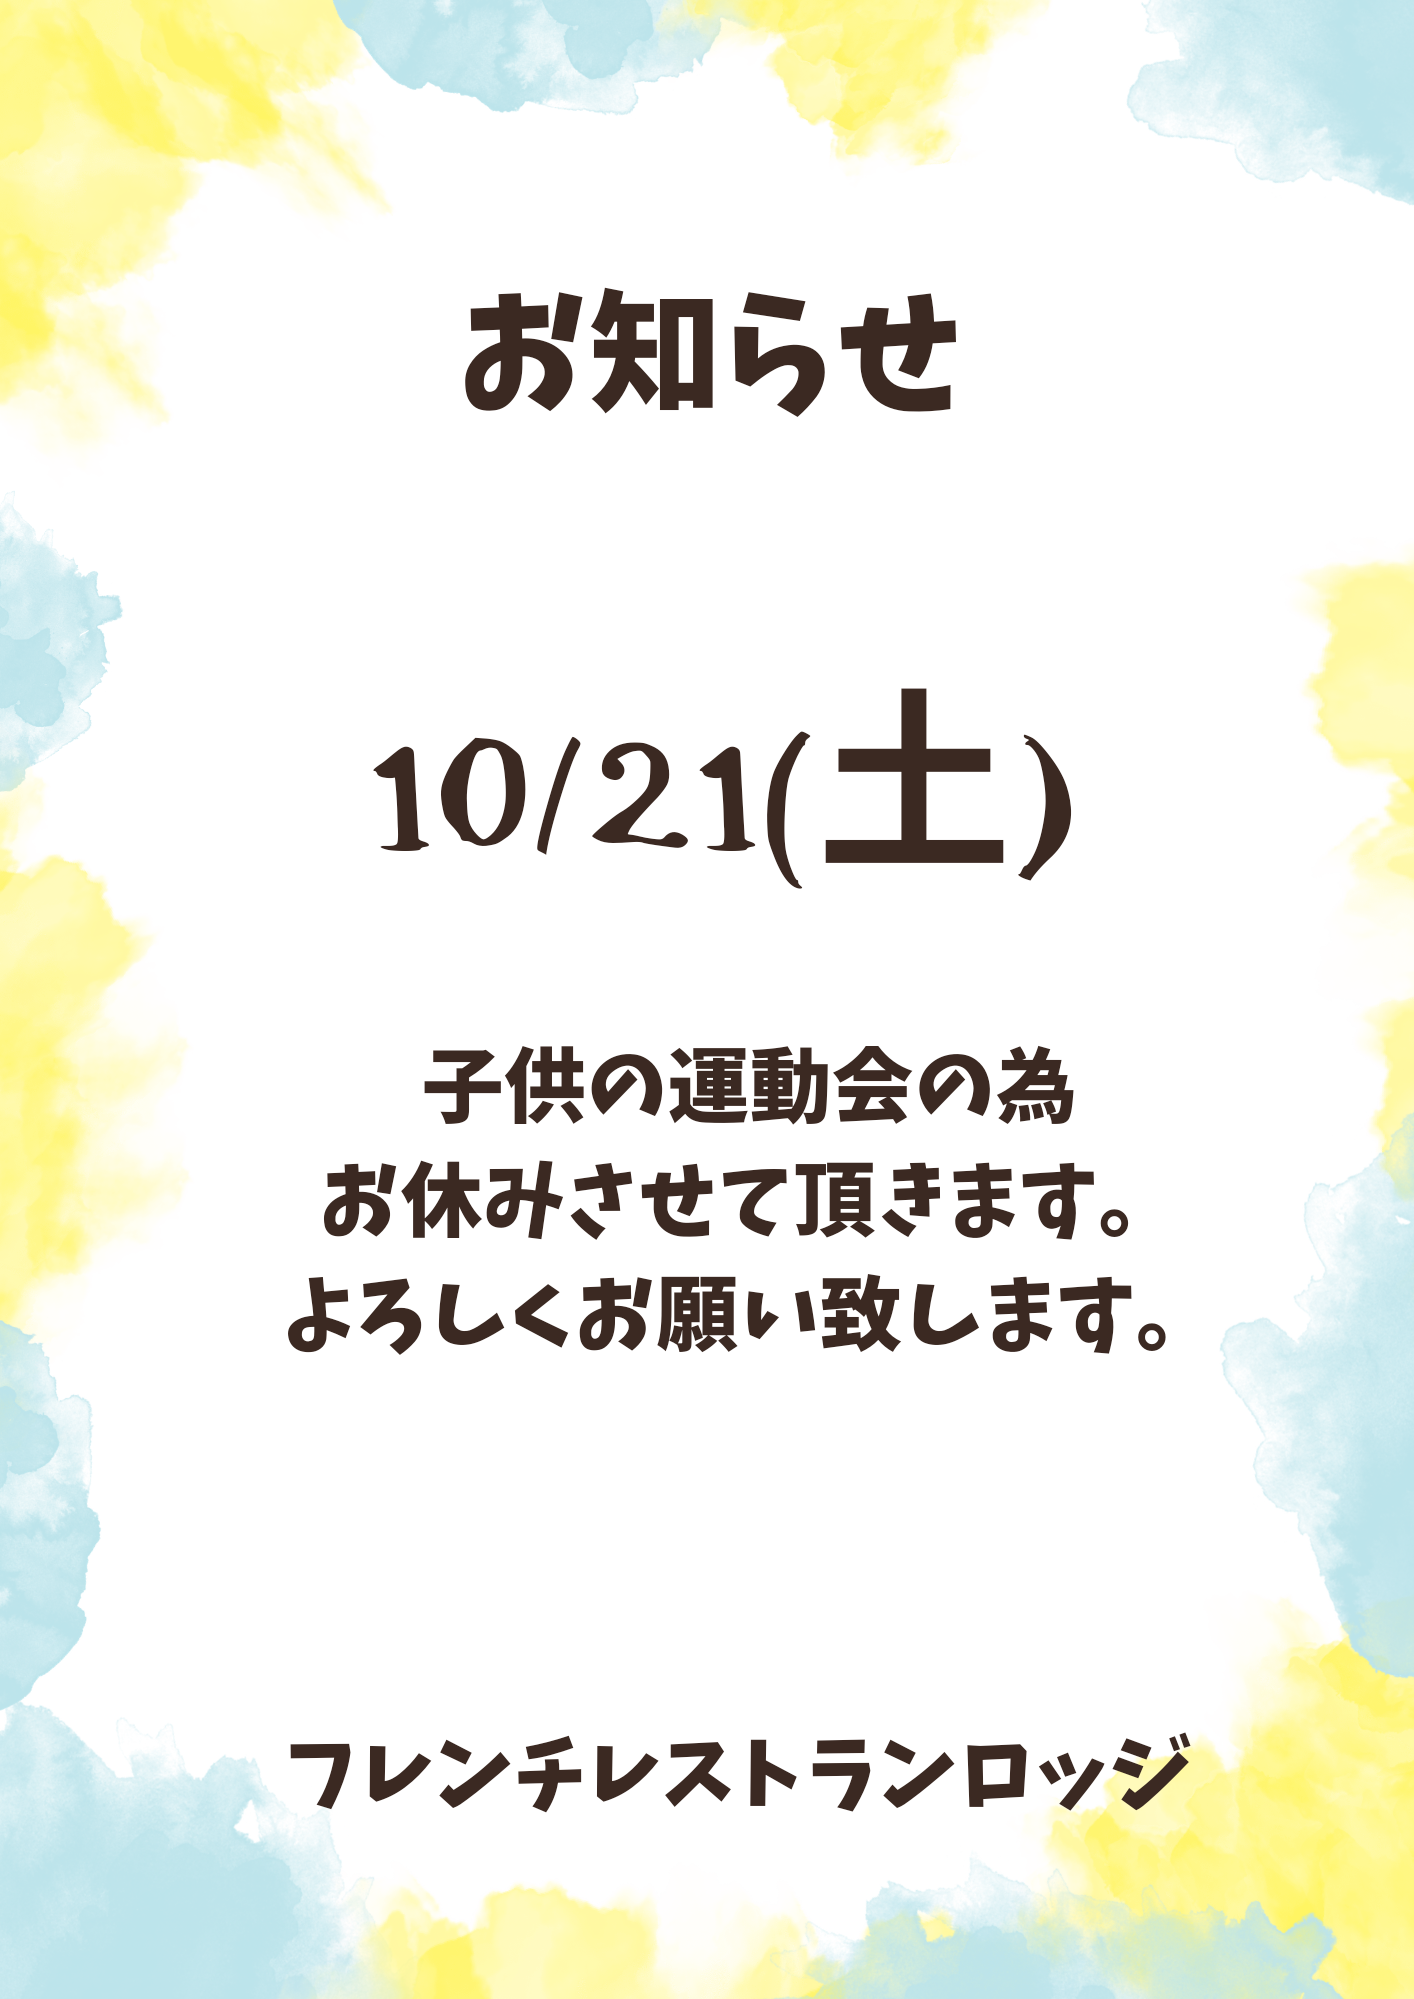 10/21(土)お休みのお知らせ